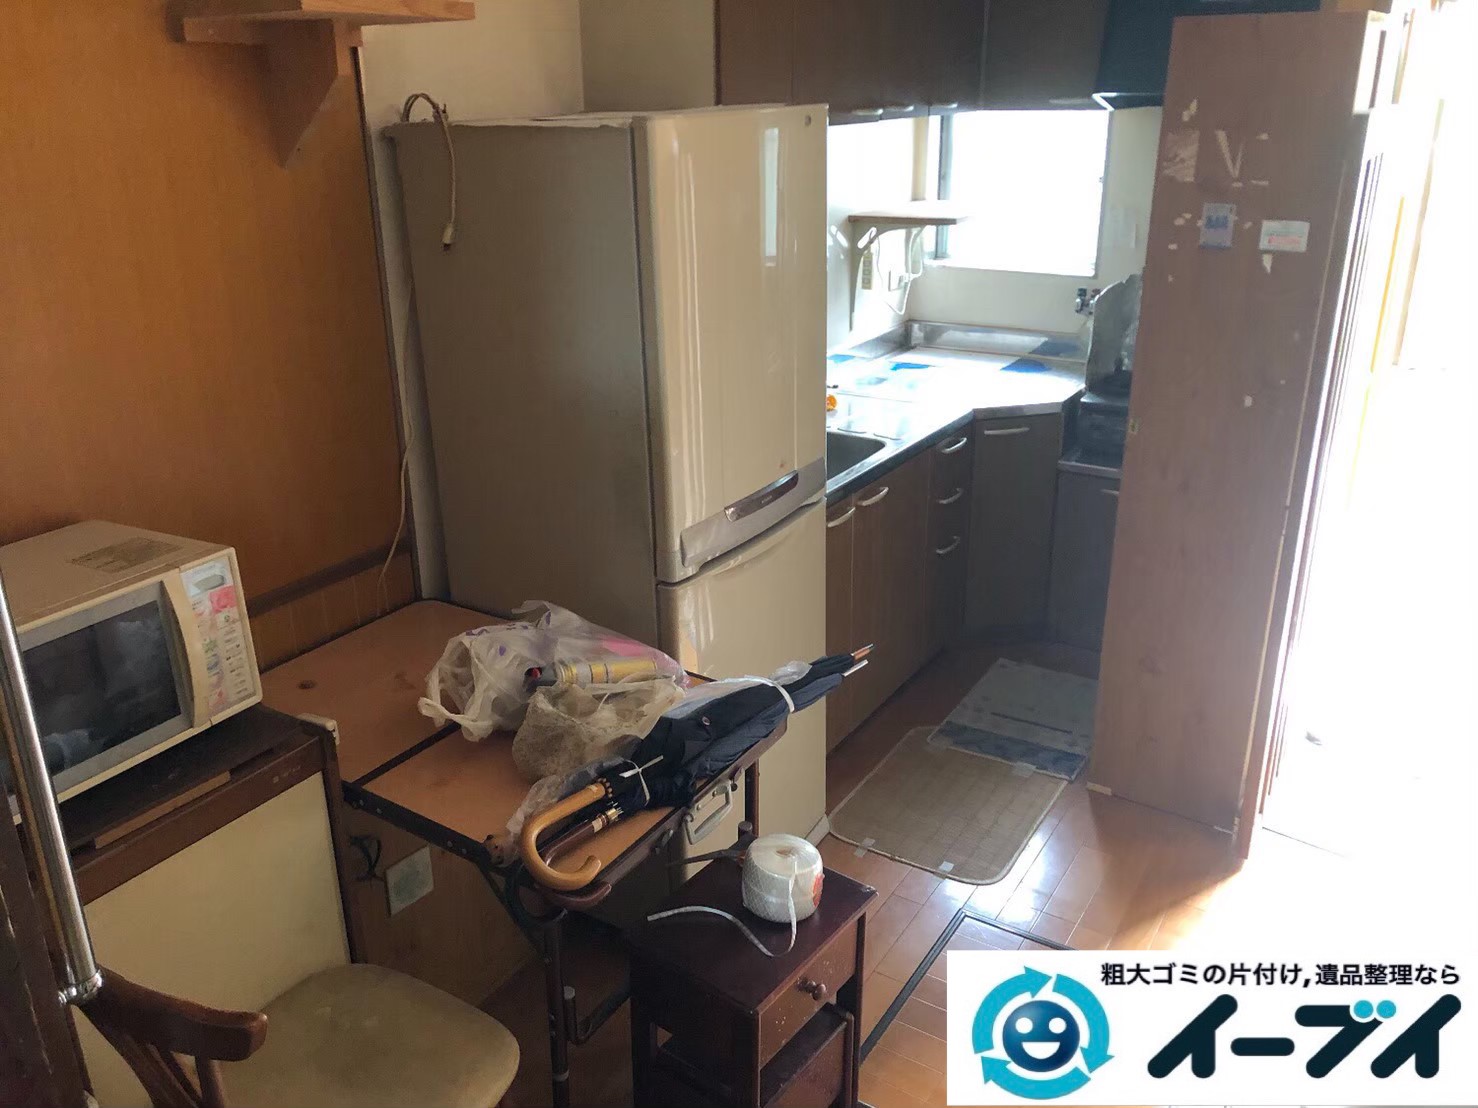 2020年4月3日大阪府大阪市生野区で引越しに伴い、お家の家財道具を一式処分させていただきました。写真4